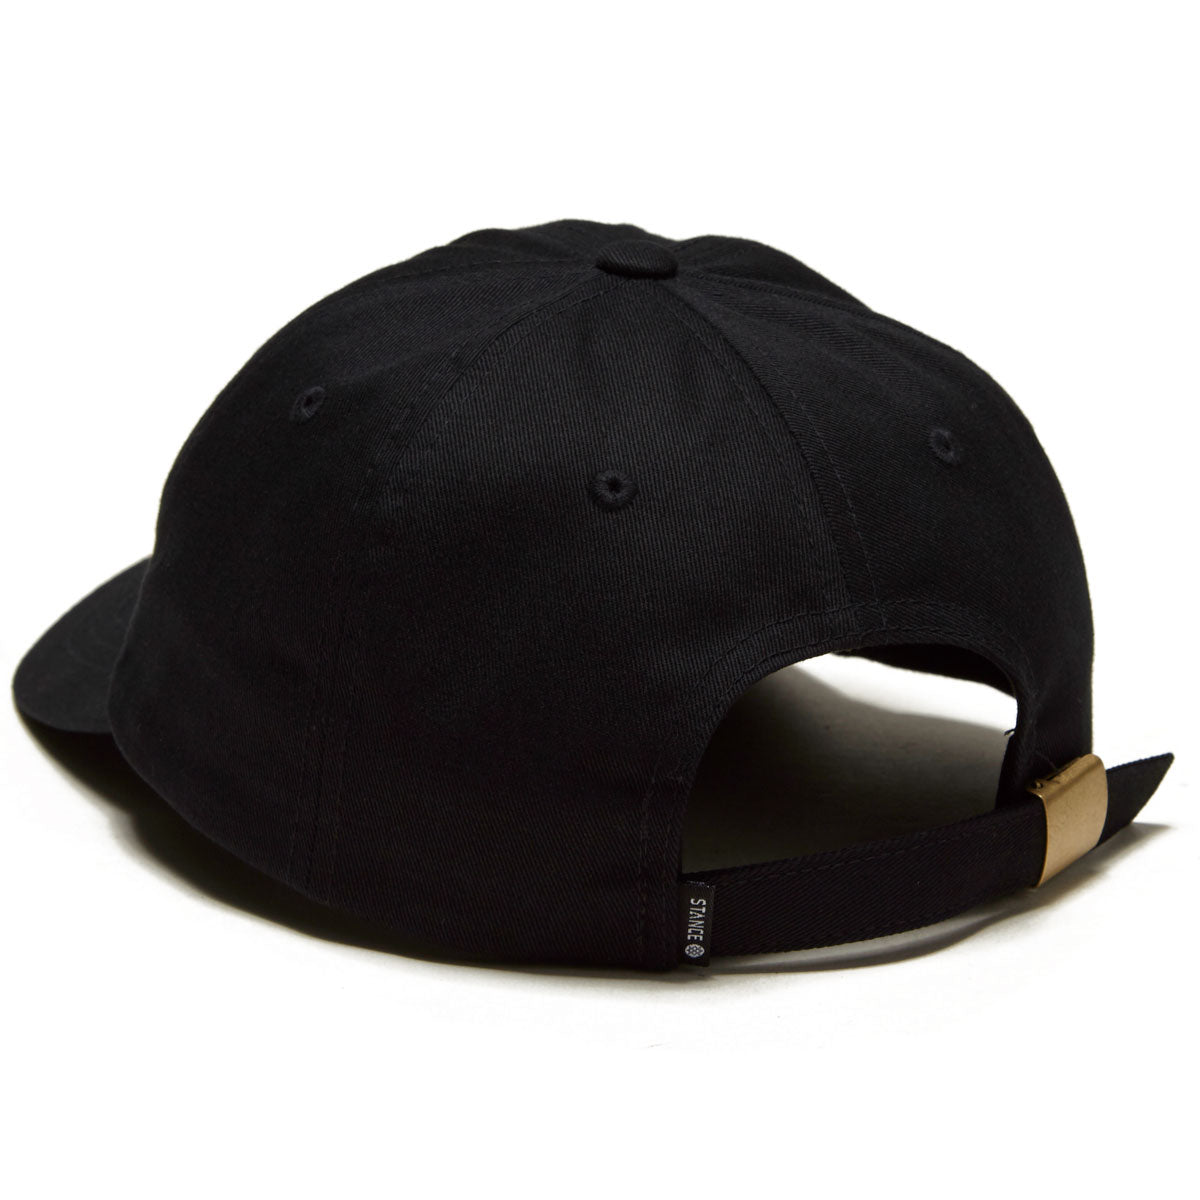 Stance Standard Adjustable Hat - Black image 2